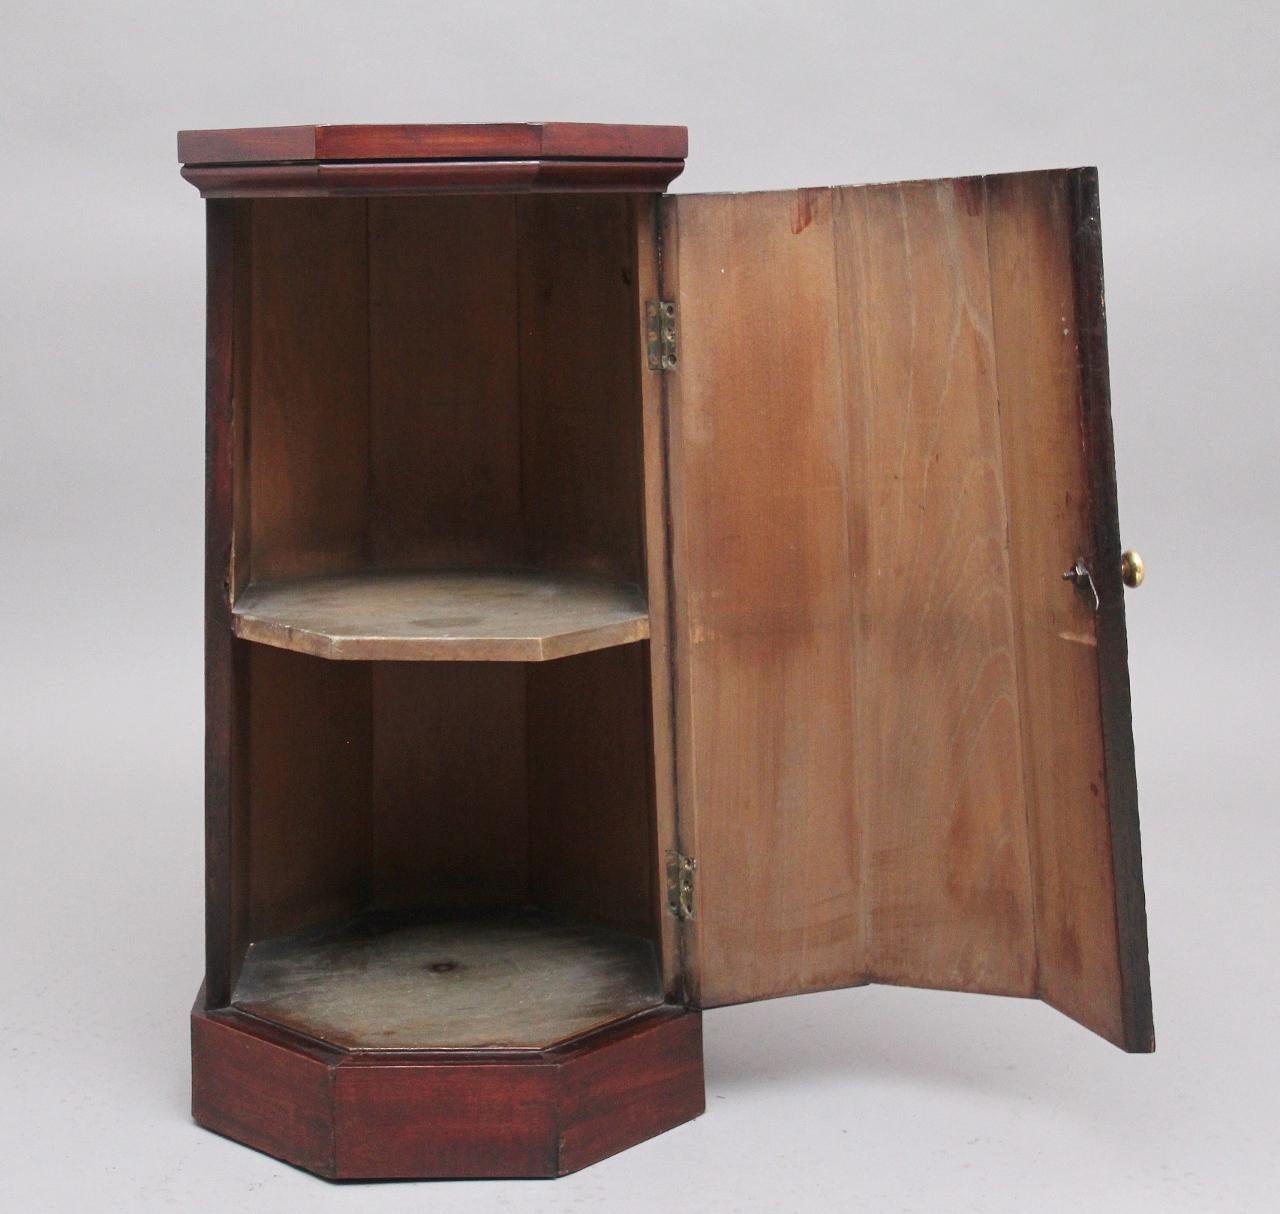 achteckiger Mahagoni-Sockel/Schrank aus dem 19. Jahrhundert mit achteckigem Oberteil über dem sich verjüngenden Sockel mit einer Scharniertür, die sich öffnet, um ein einzelnes festes Regal freizulegen; die Tür hat einen abschließbaren, gedrehten